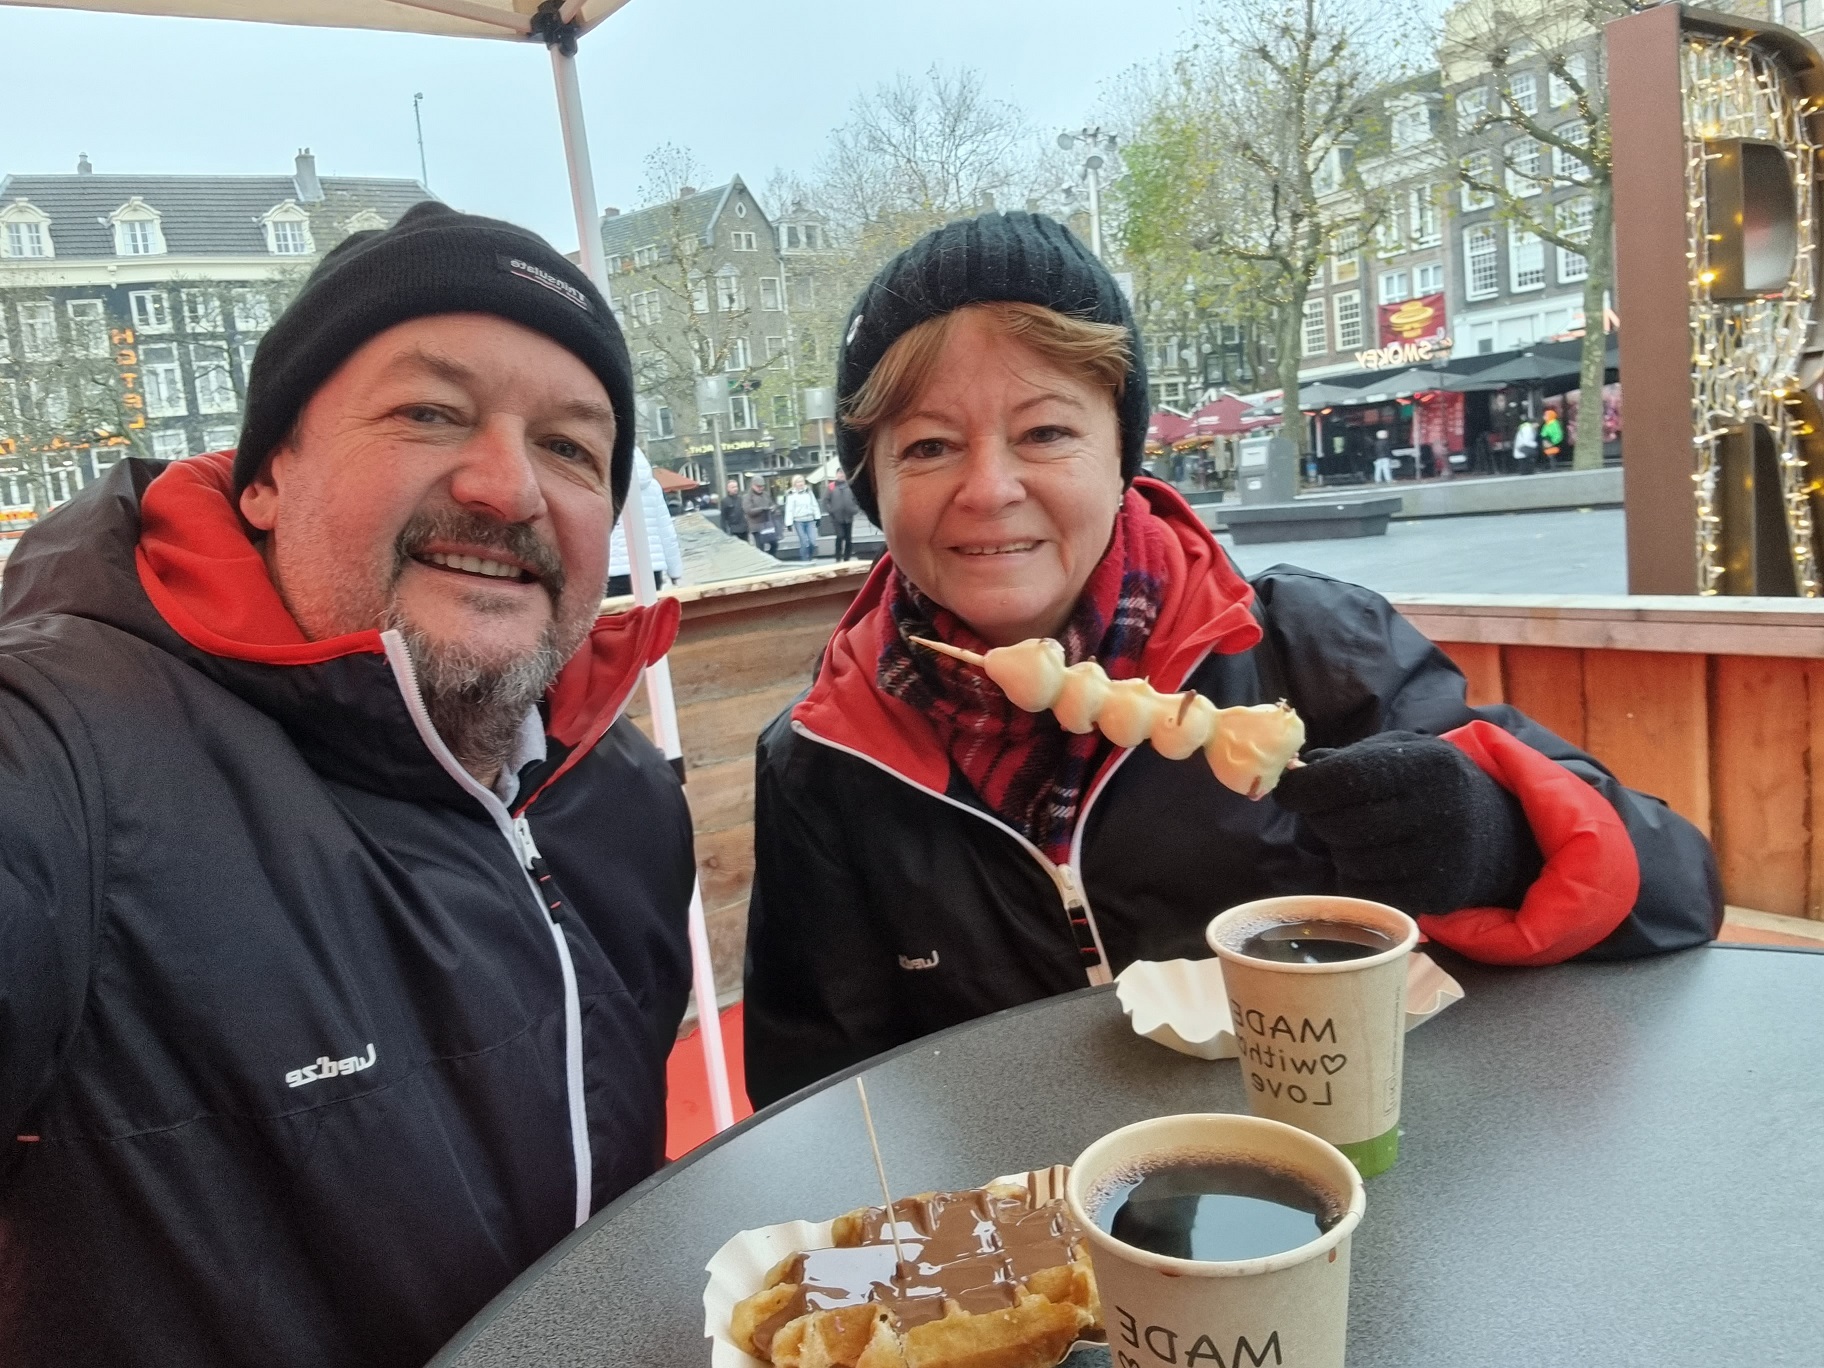 Amszterdamban kihagyhatatlan a friss, helyben sütött gofri, finom csokiöntettel. És persze a fehér csokival bevont eper se kutya! Na, neked fogyókúra!